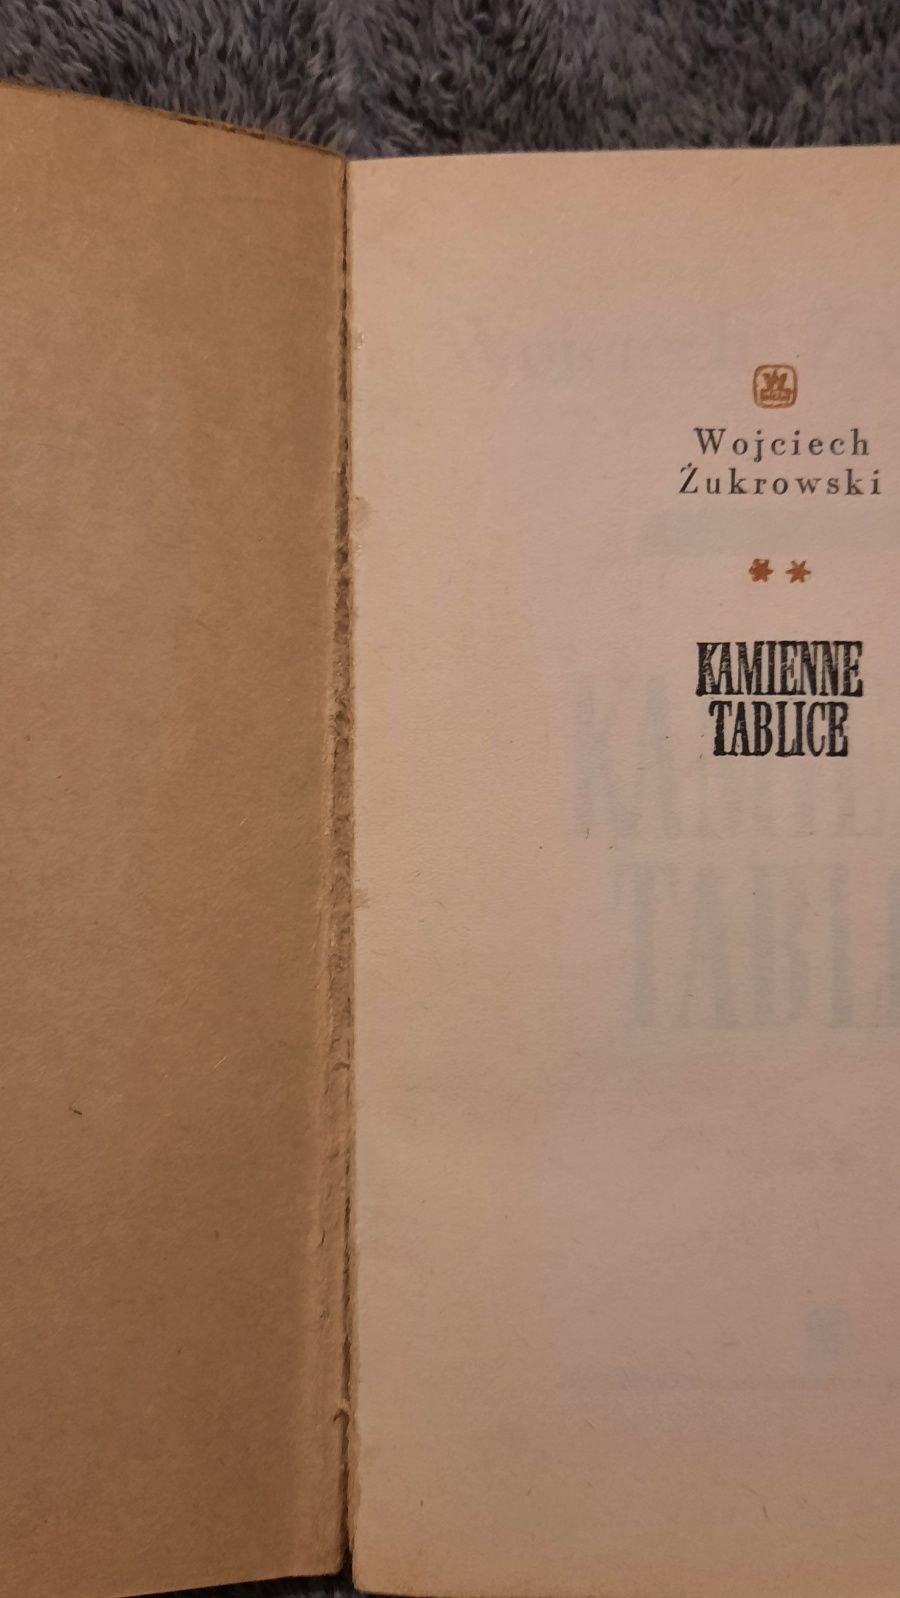 Kamienne tablice- Wojciech Żukrowski książki zestaw tom 1 tom 2